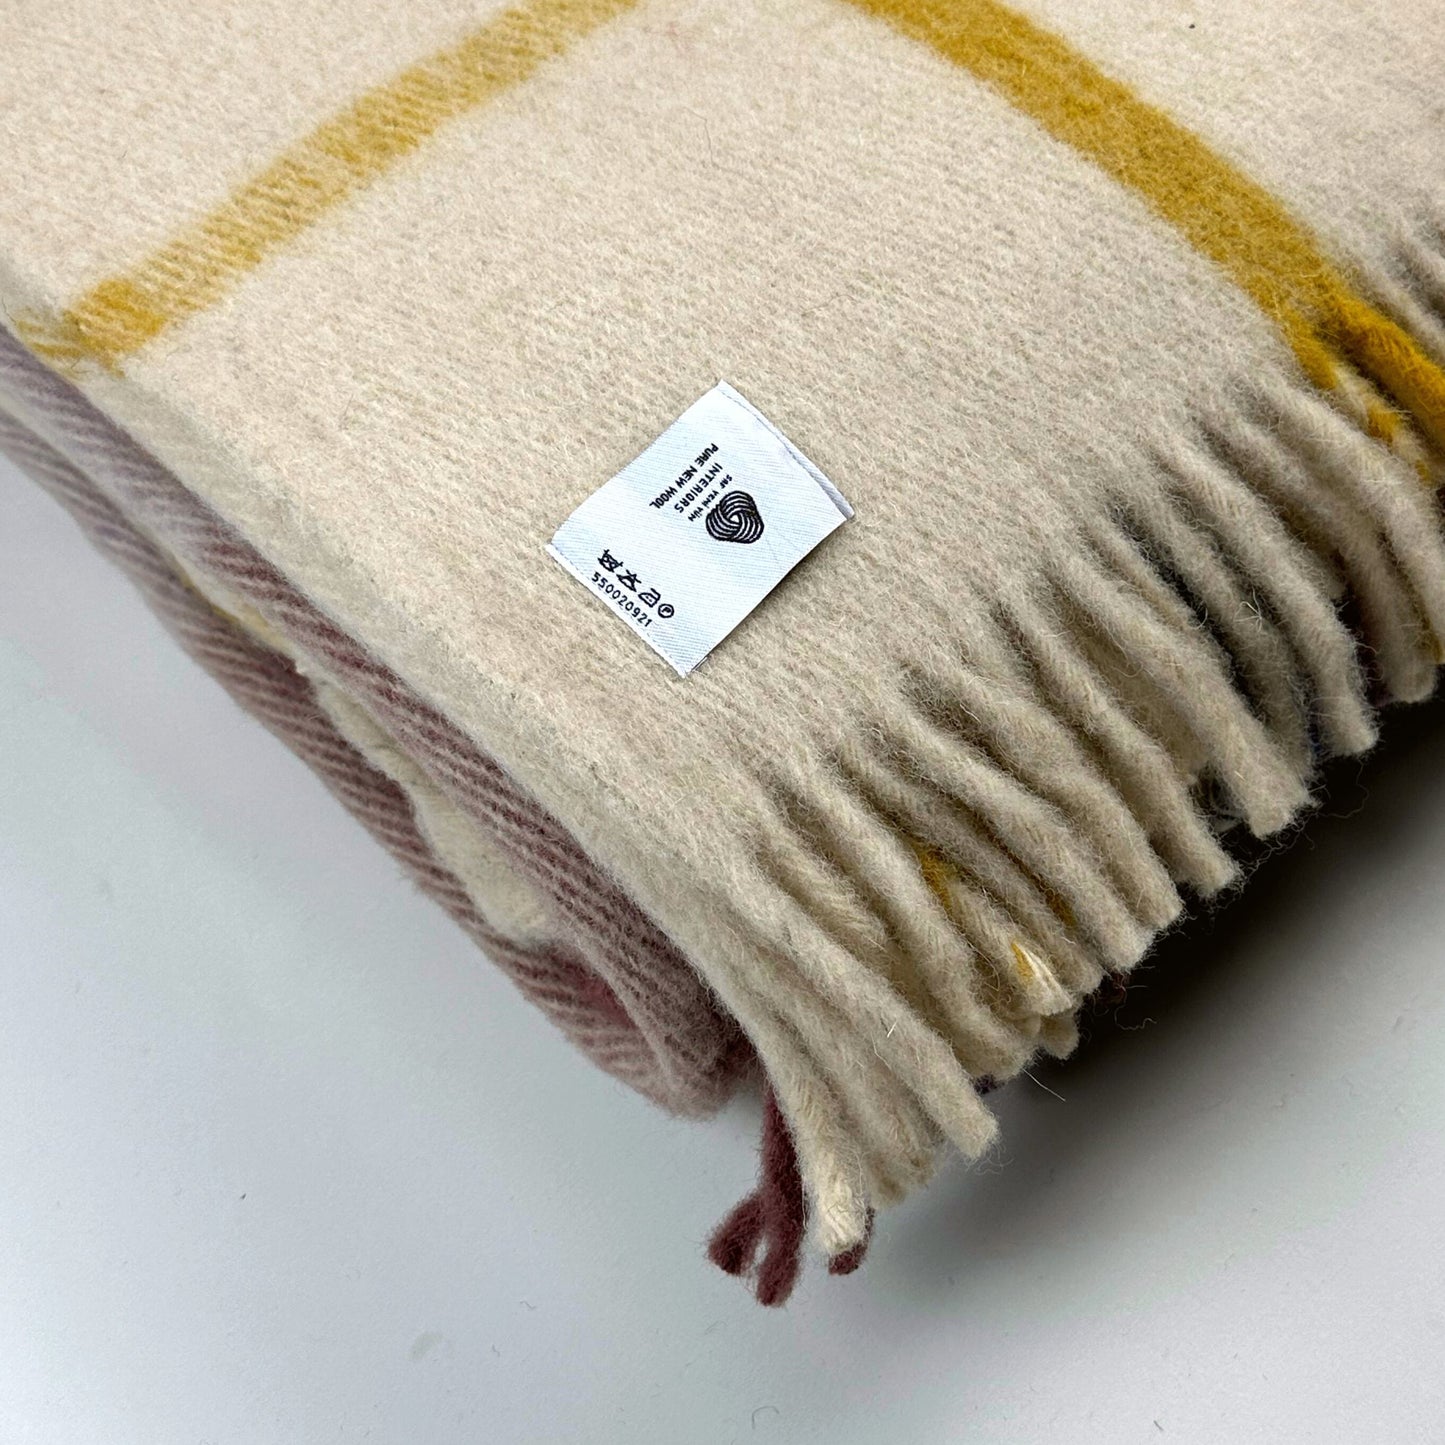 İskandinav Serisi Woolmark Çift Kişilik Saf Yün Ekose Battaniye/Yatak Örtüsü Lila Krem Lacivert, 200x220 cm